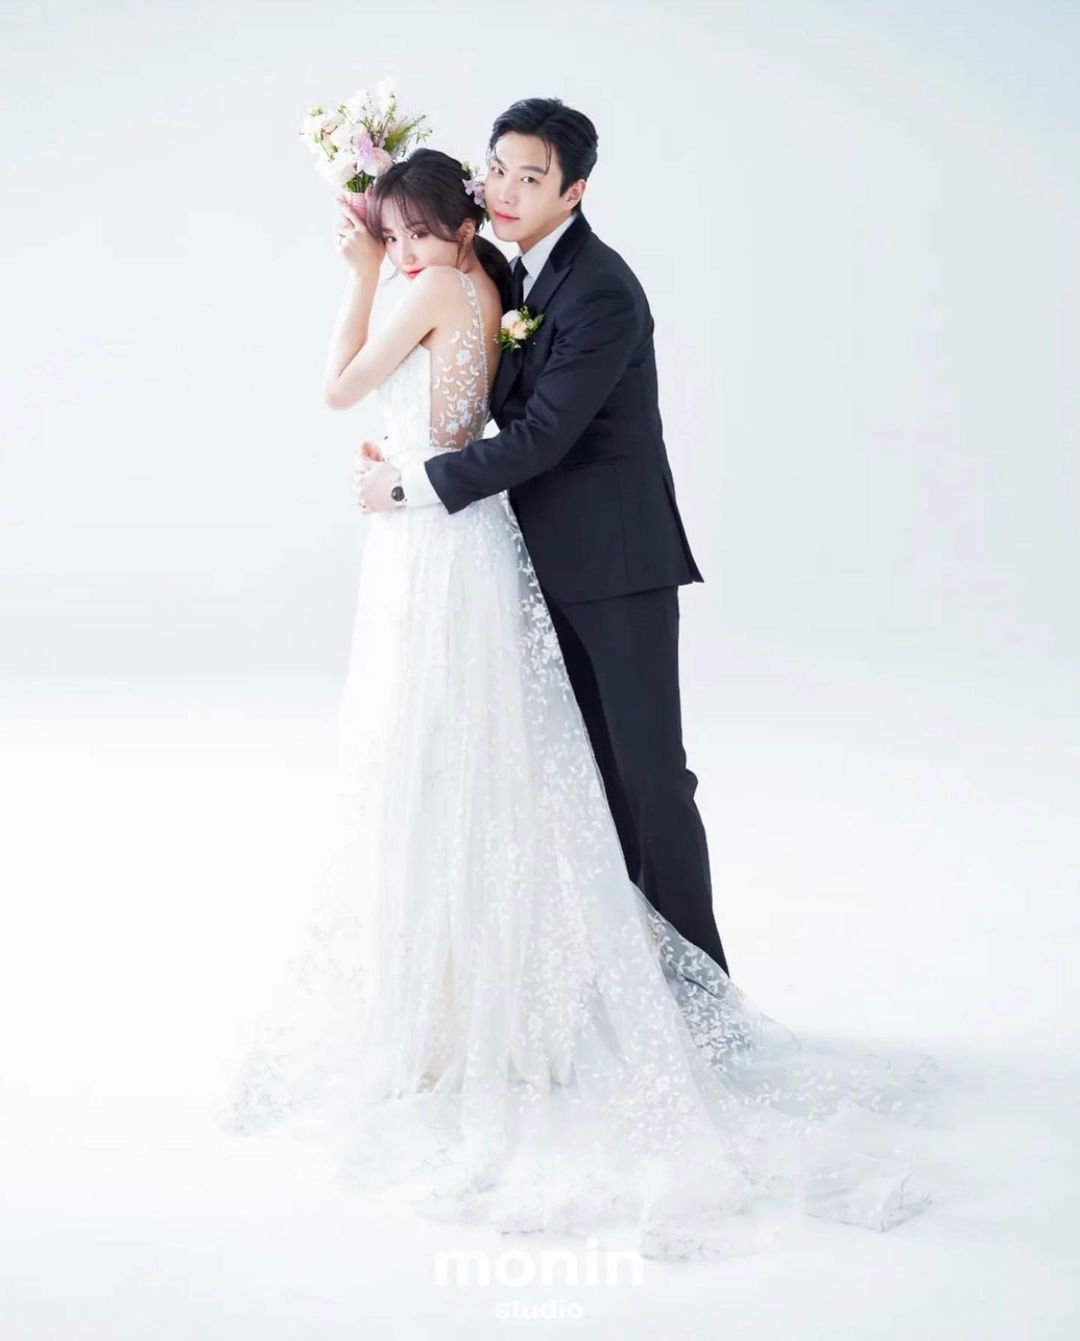 Showbiz Hàn được mùa cưới: Sau Hyun Bin và Son Ye Jin, có cặp đôi idol chốt đơn về chung nhà chỉ sau 1 năm hẹn hò - Ảnh 3.